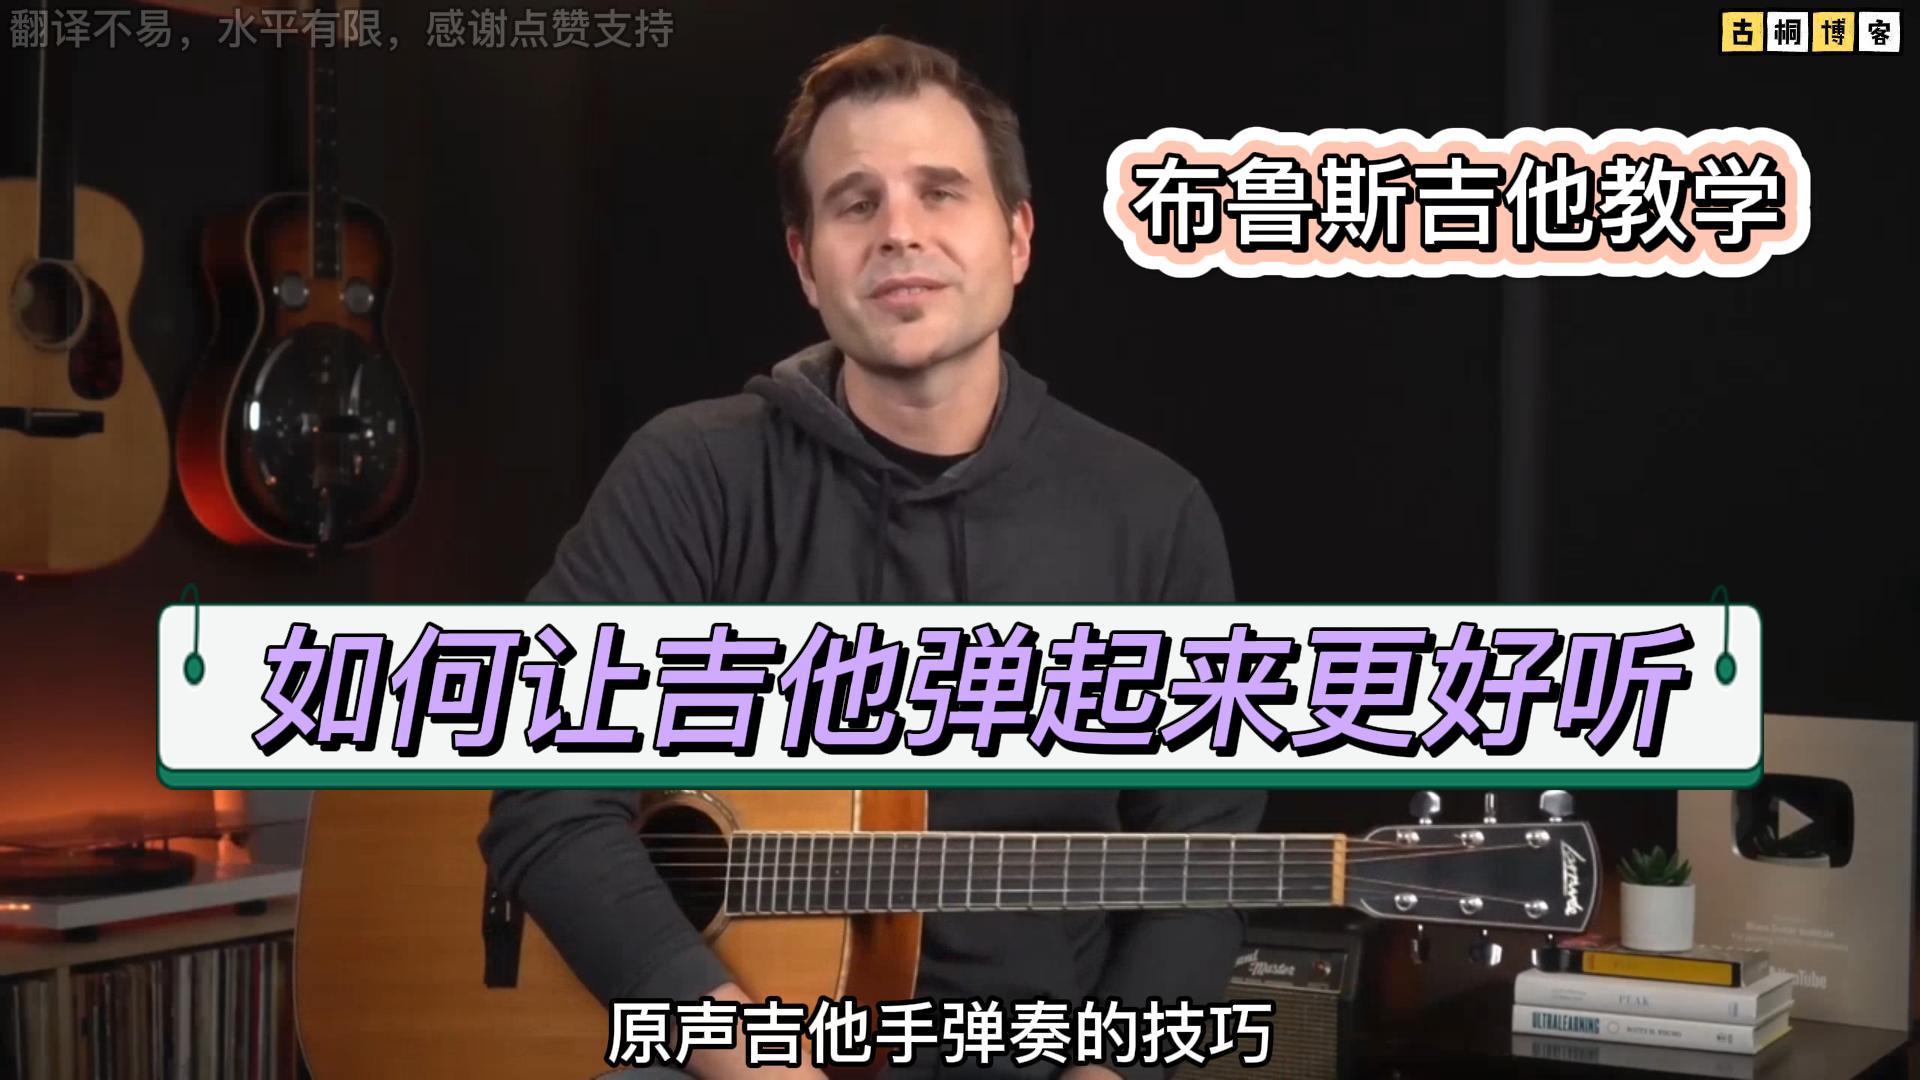 布鲁斯吉他教学 | 如何让吉他弹起来更好听《中文字幕》-古桐博客